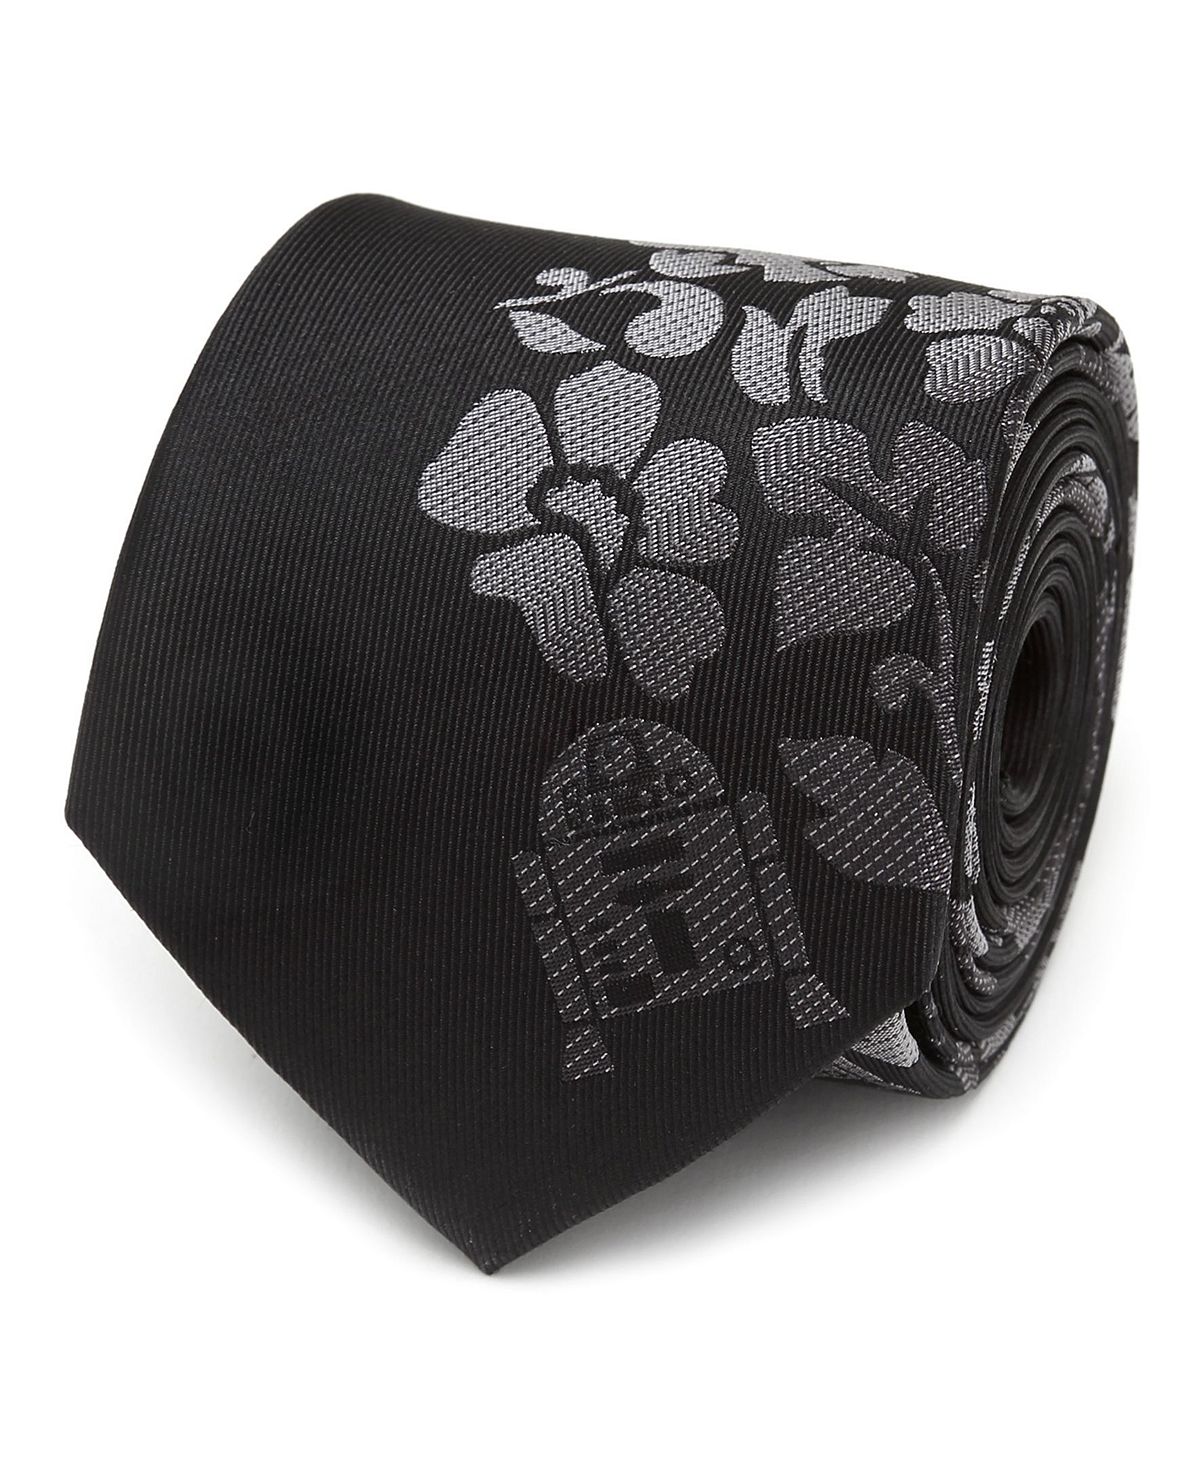 R2D2 Мужской галстук с цветочным принтом Star Wars галстук хаки черно серый 6см